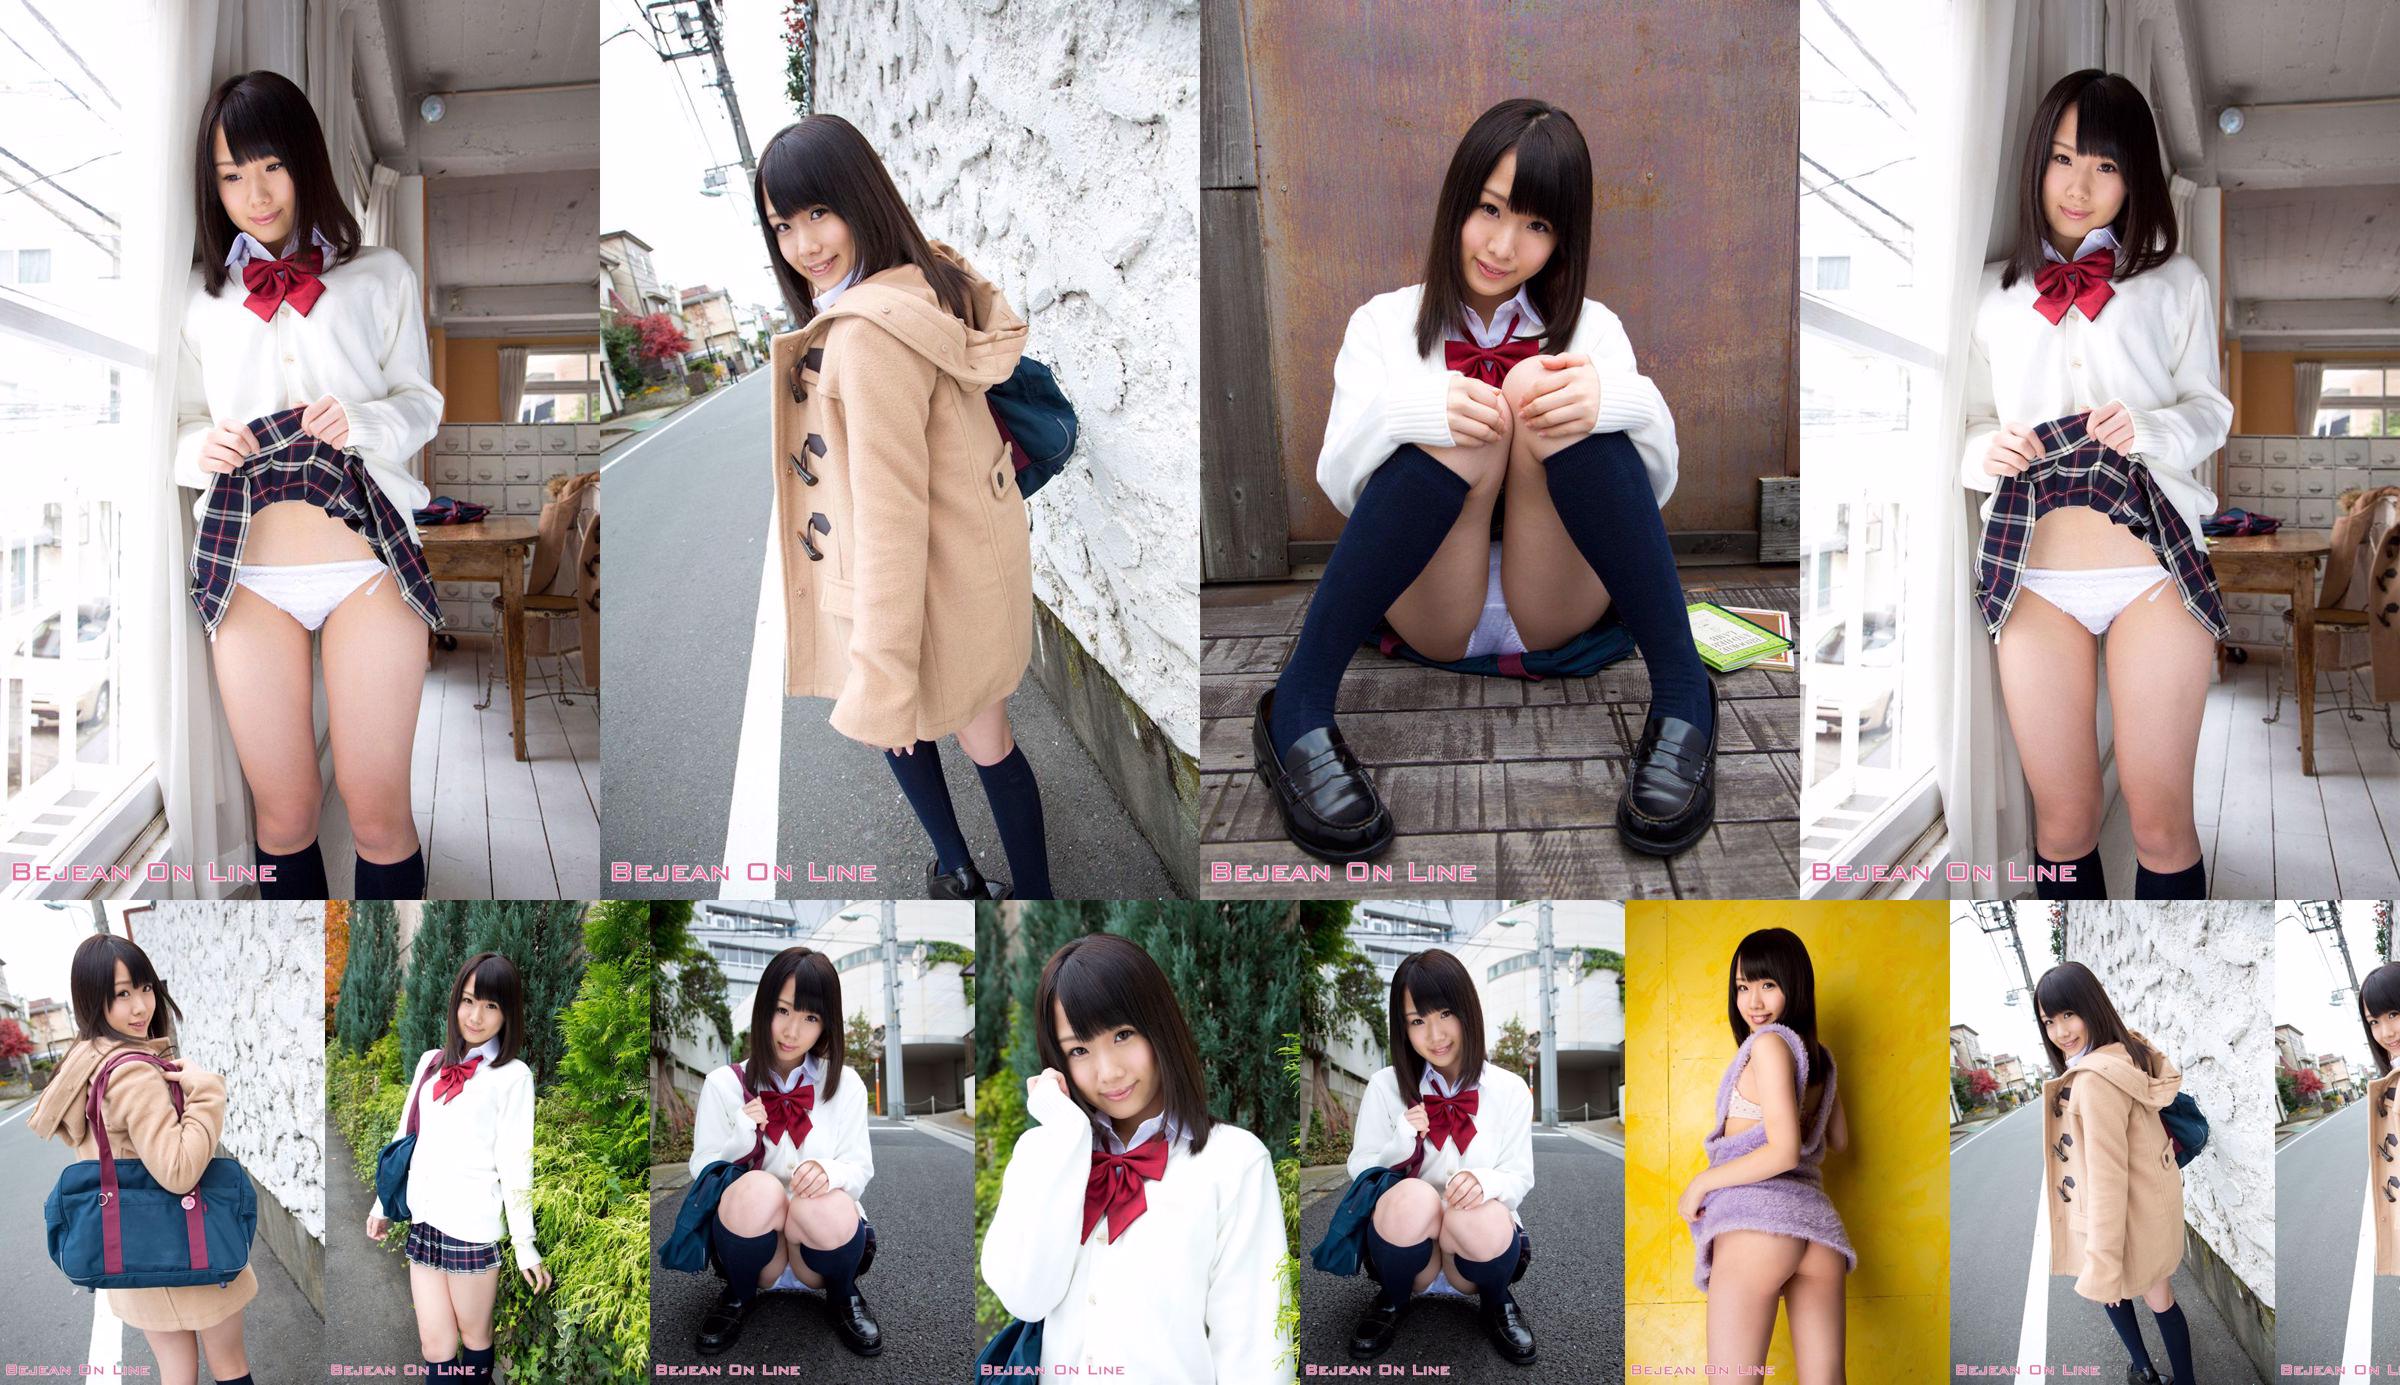 第一照片美女Ami Hyakutake Ami Hyakutake / Ami Hyakutake [Bejean On Line] No.5b47dc 第1頁